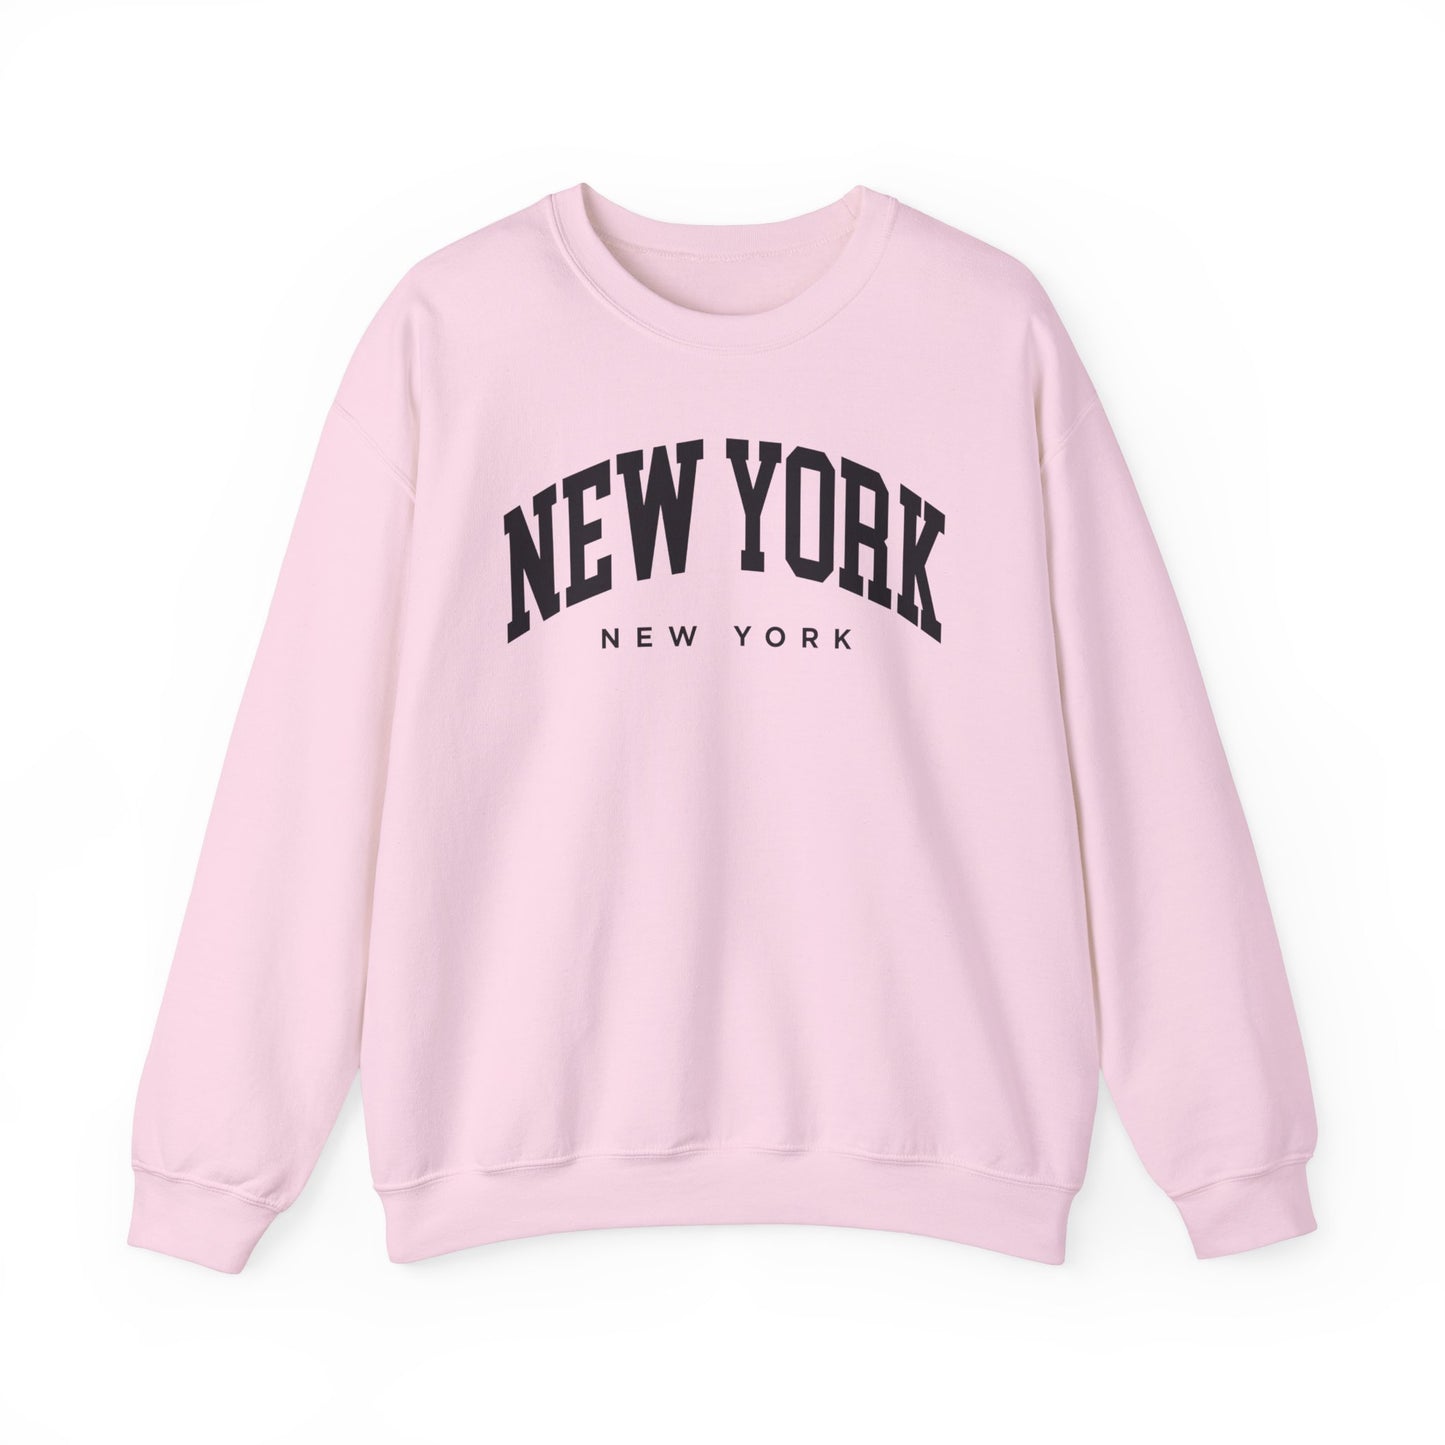 New York New York Sweatshirt